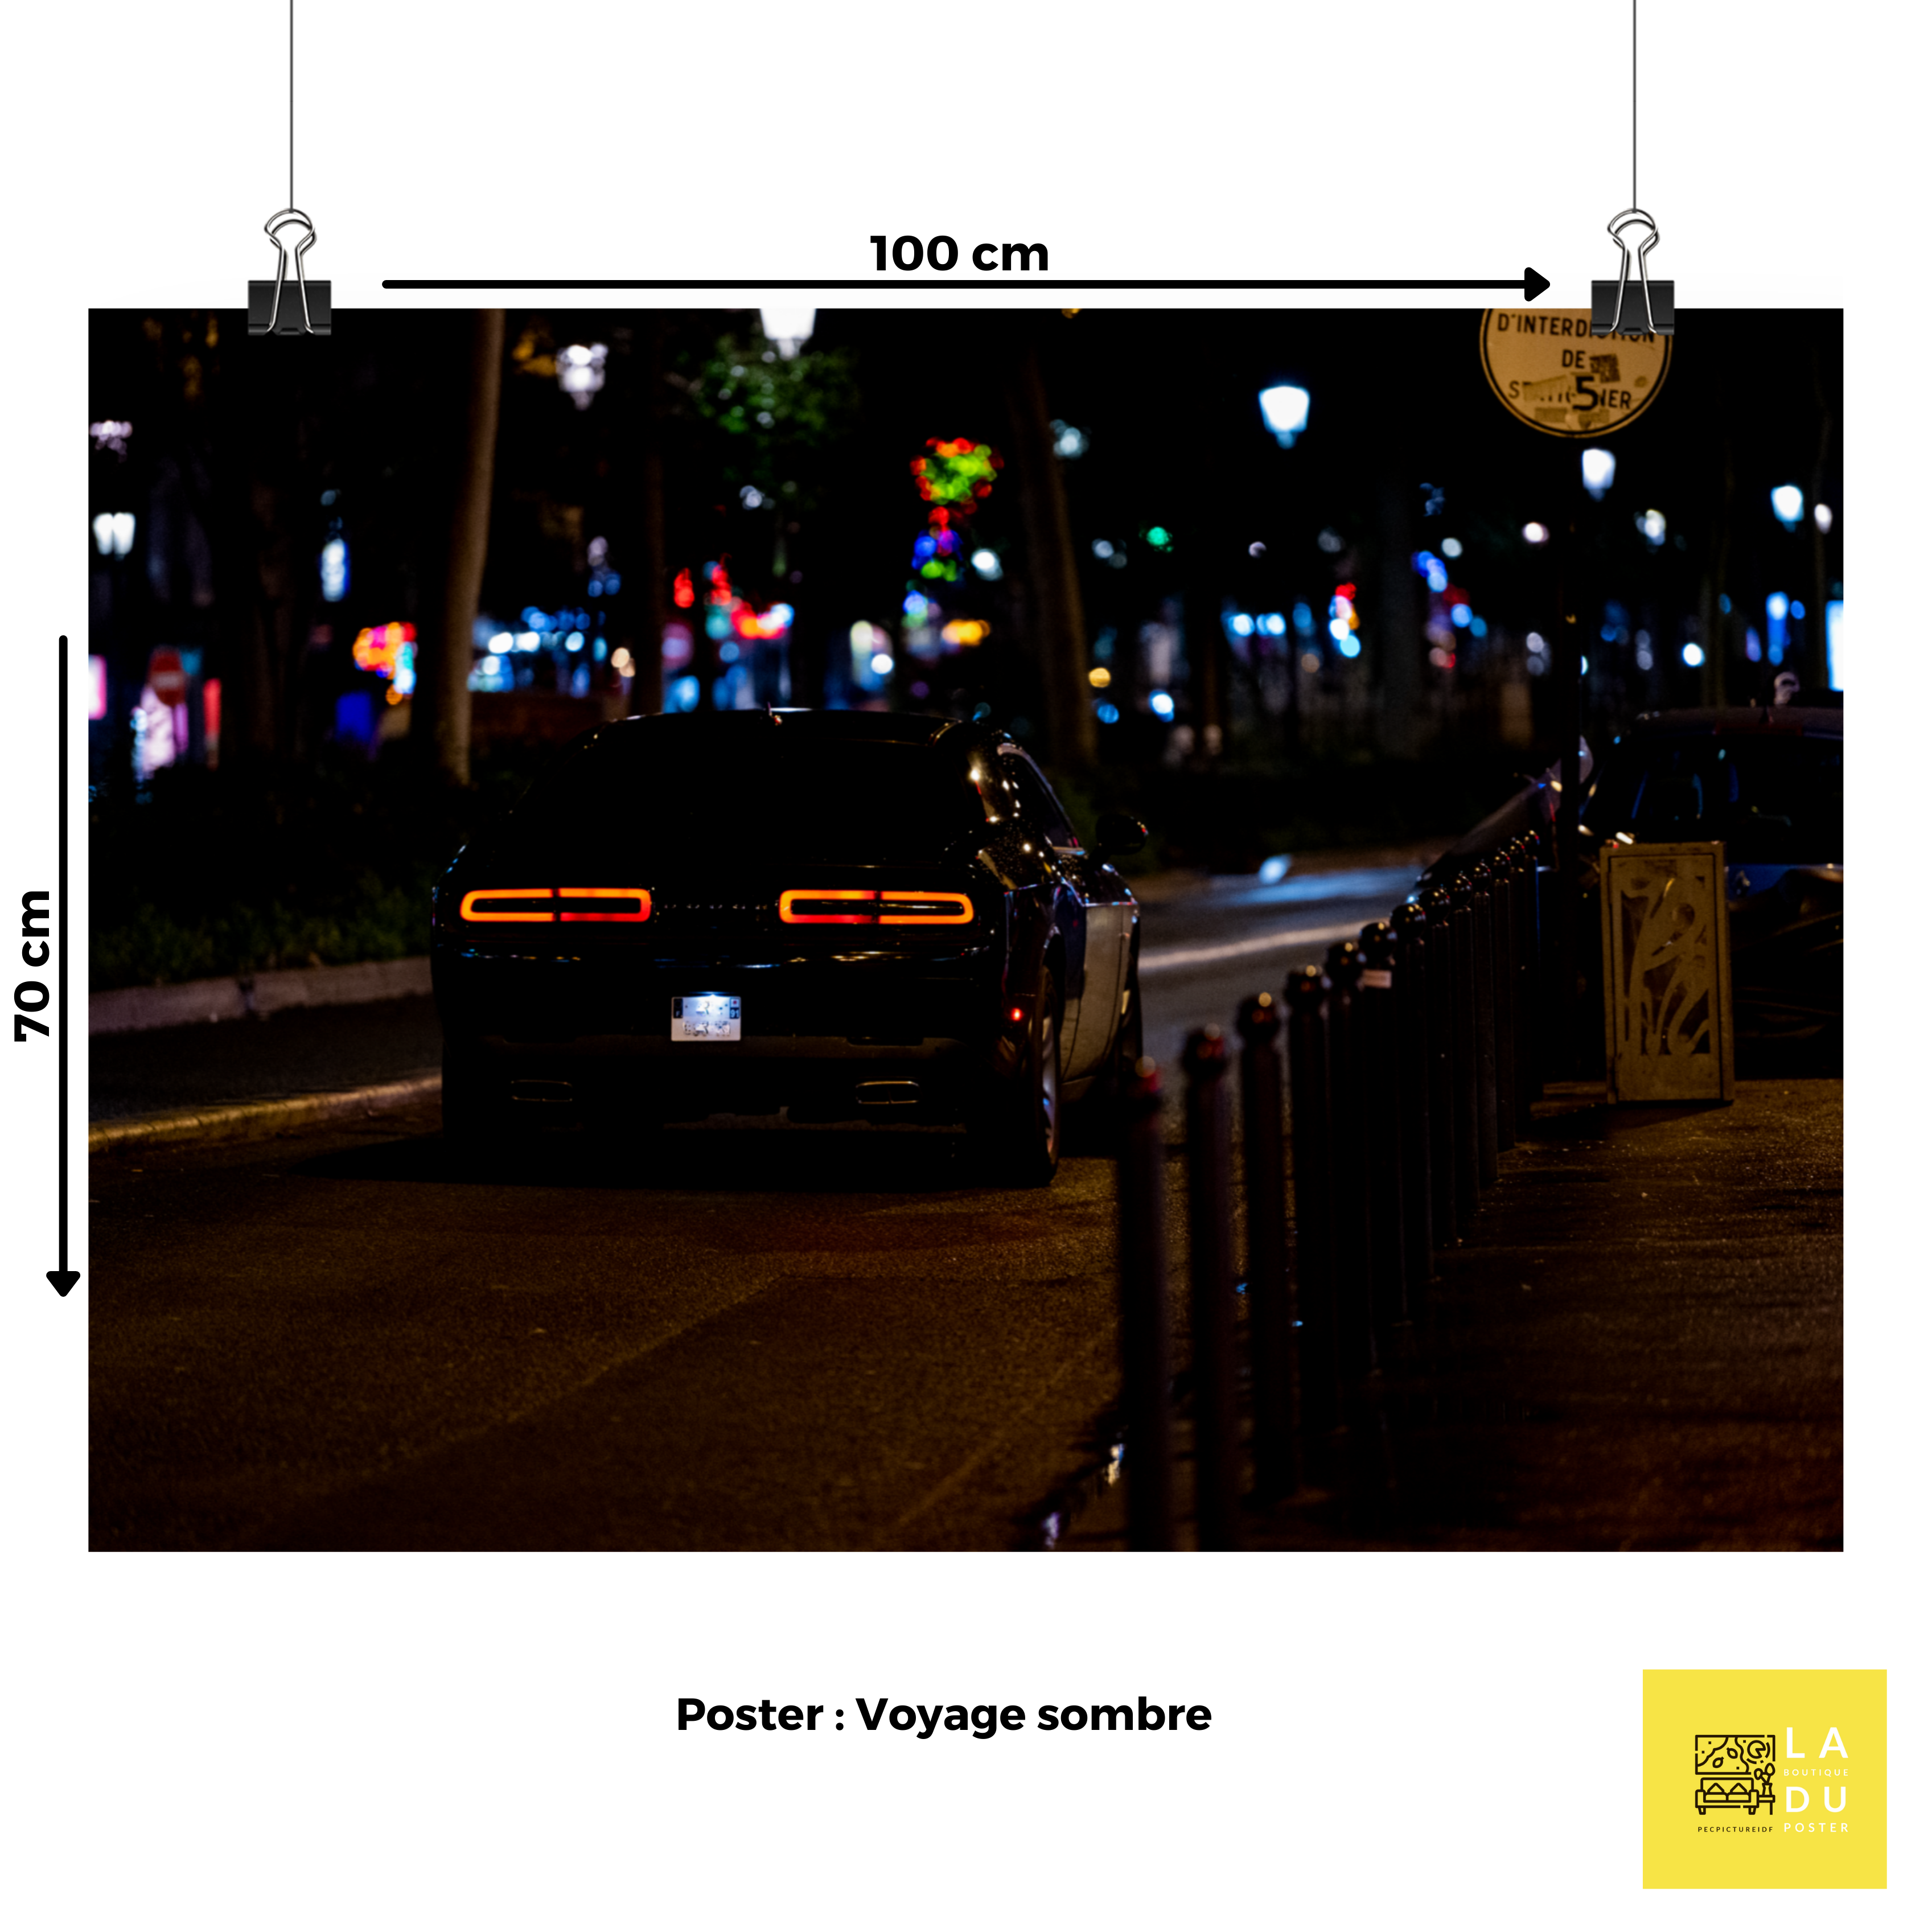 Poster mural - Dodge Challenger – Photographie de voiture la nuit – Poster photographie, photographie murale et des posters muraux unique au monde. La boutique de posters créée par Yann Peccard un Photographe français.